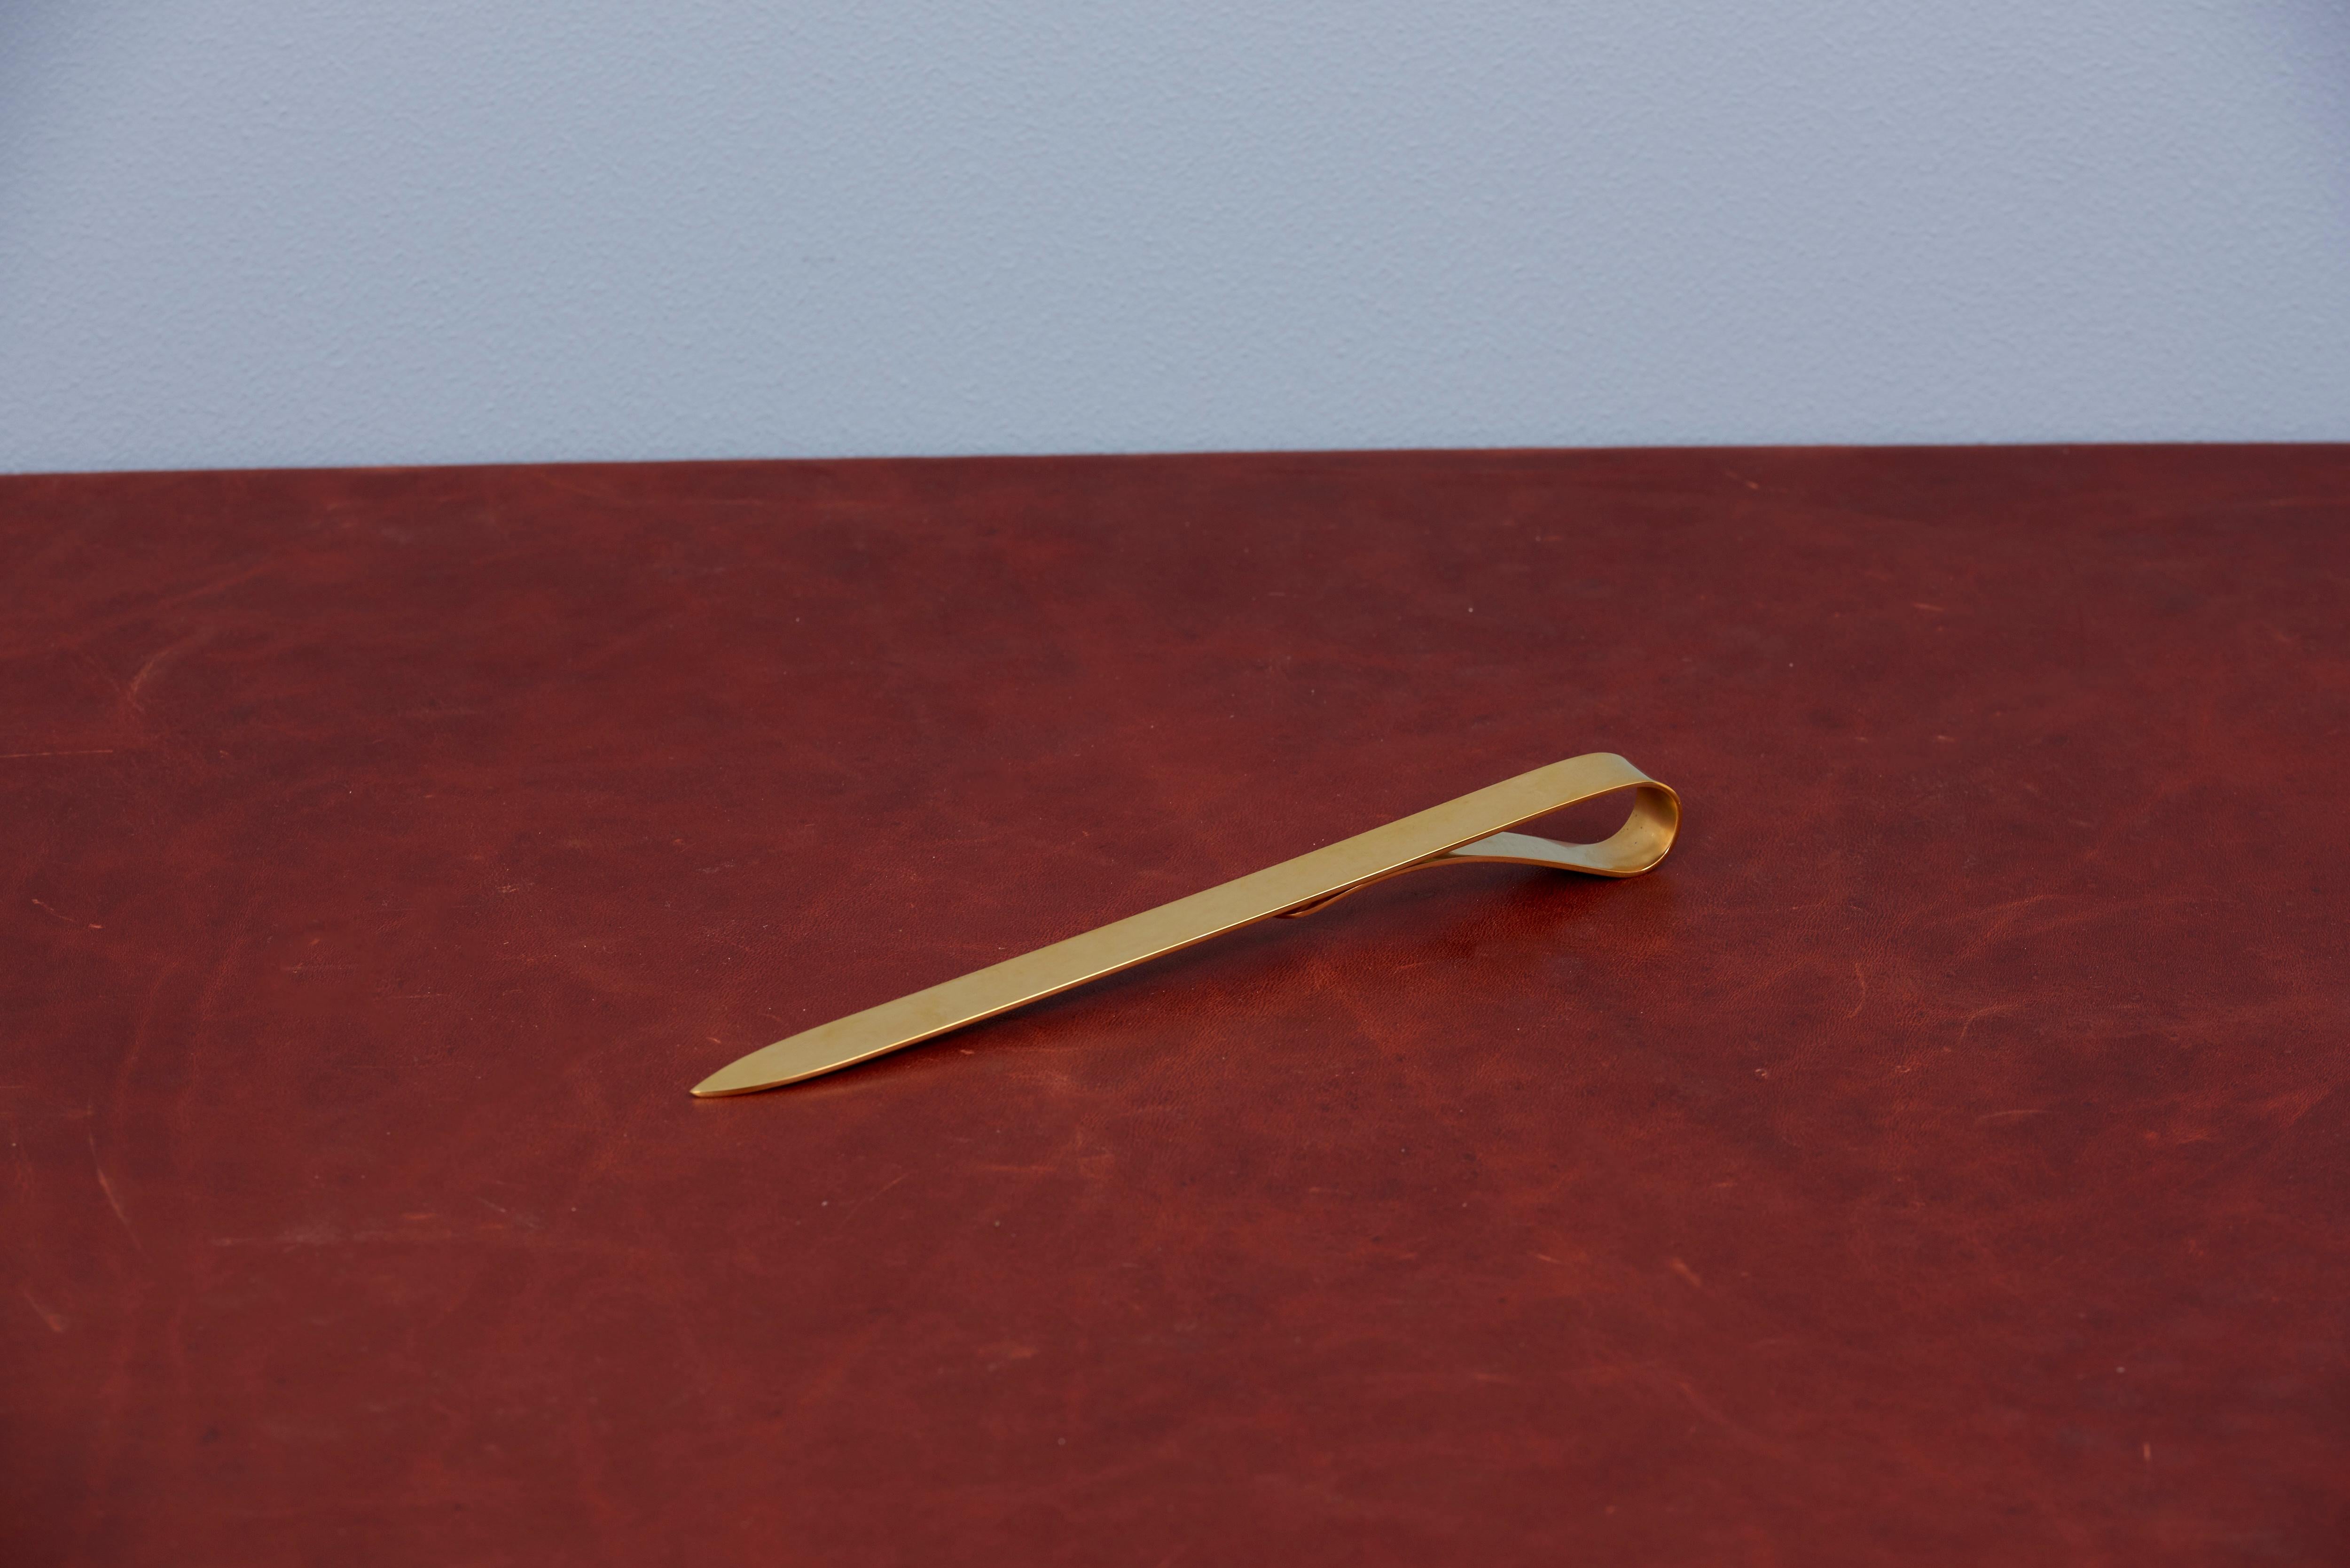 Brass paperknife #7209 by Carl Auböck.